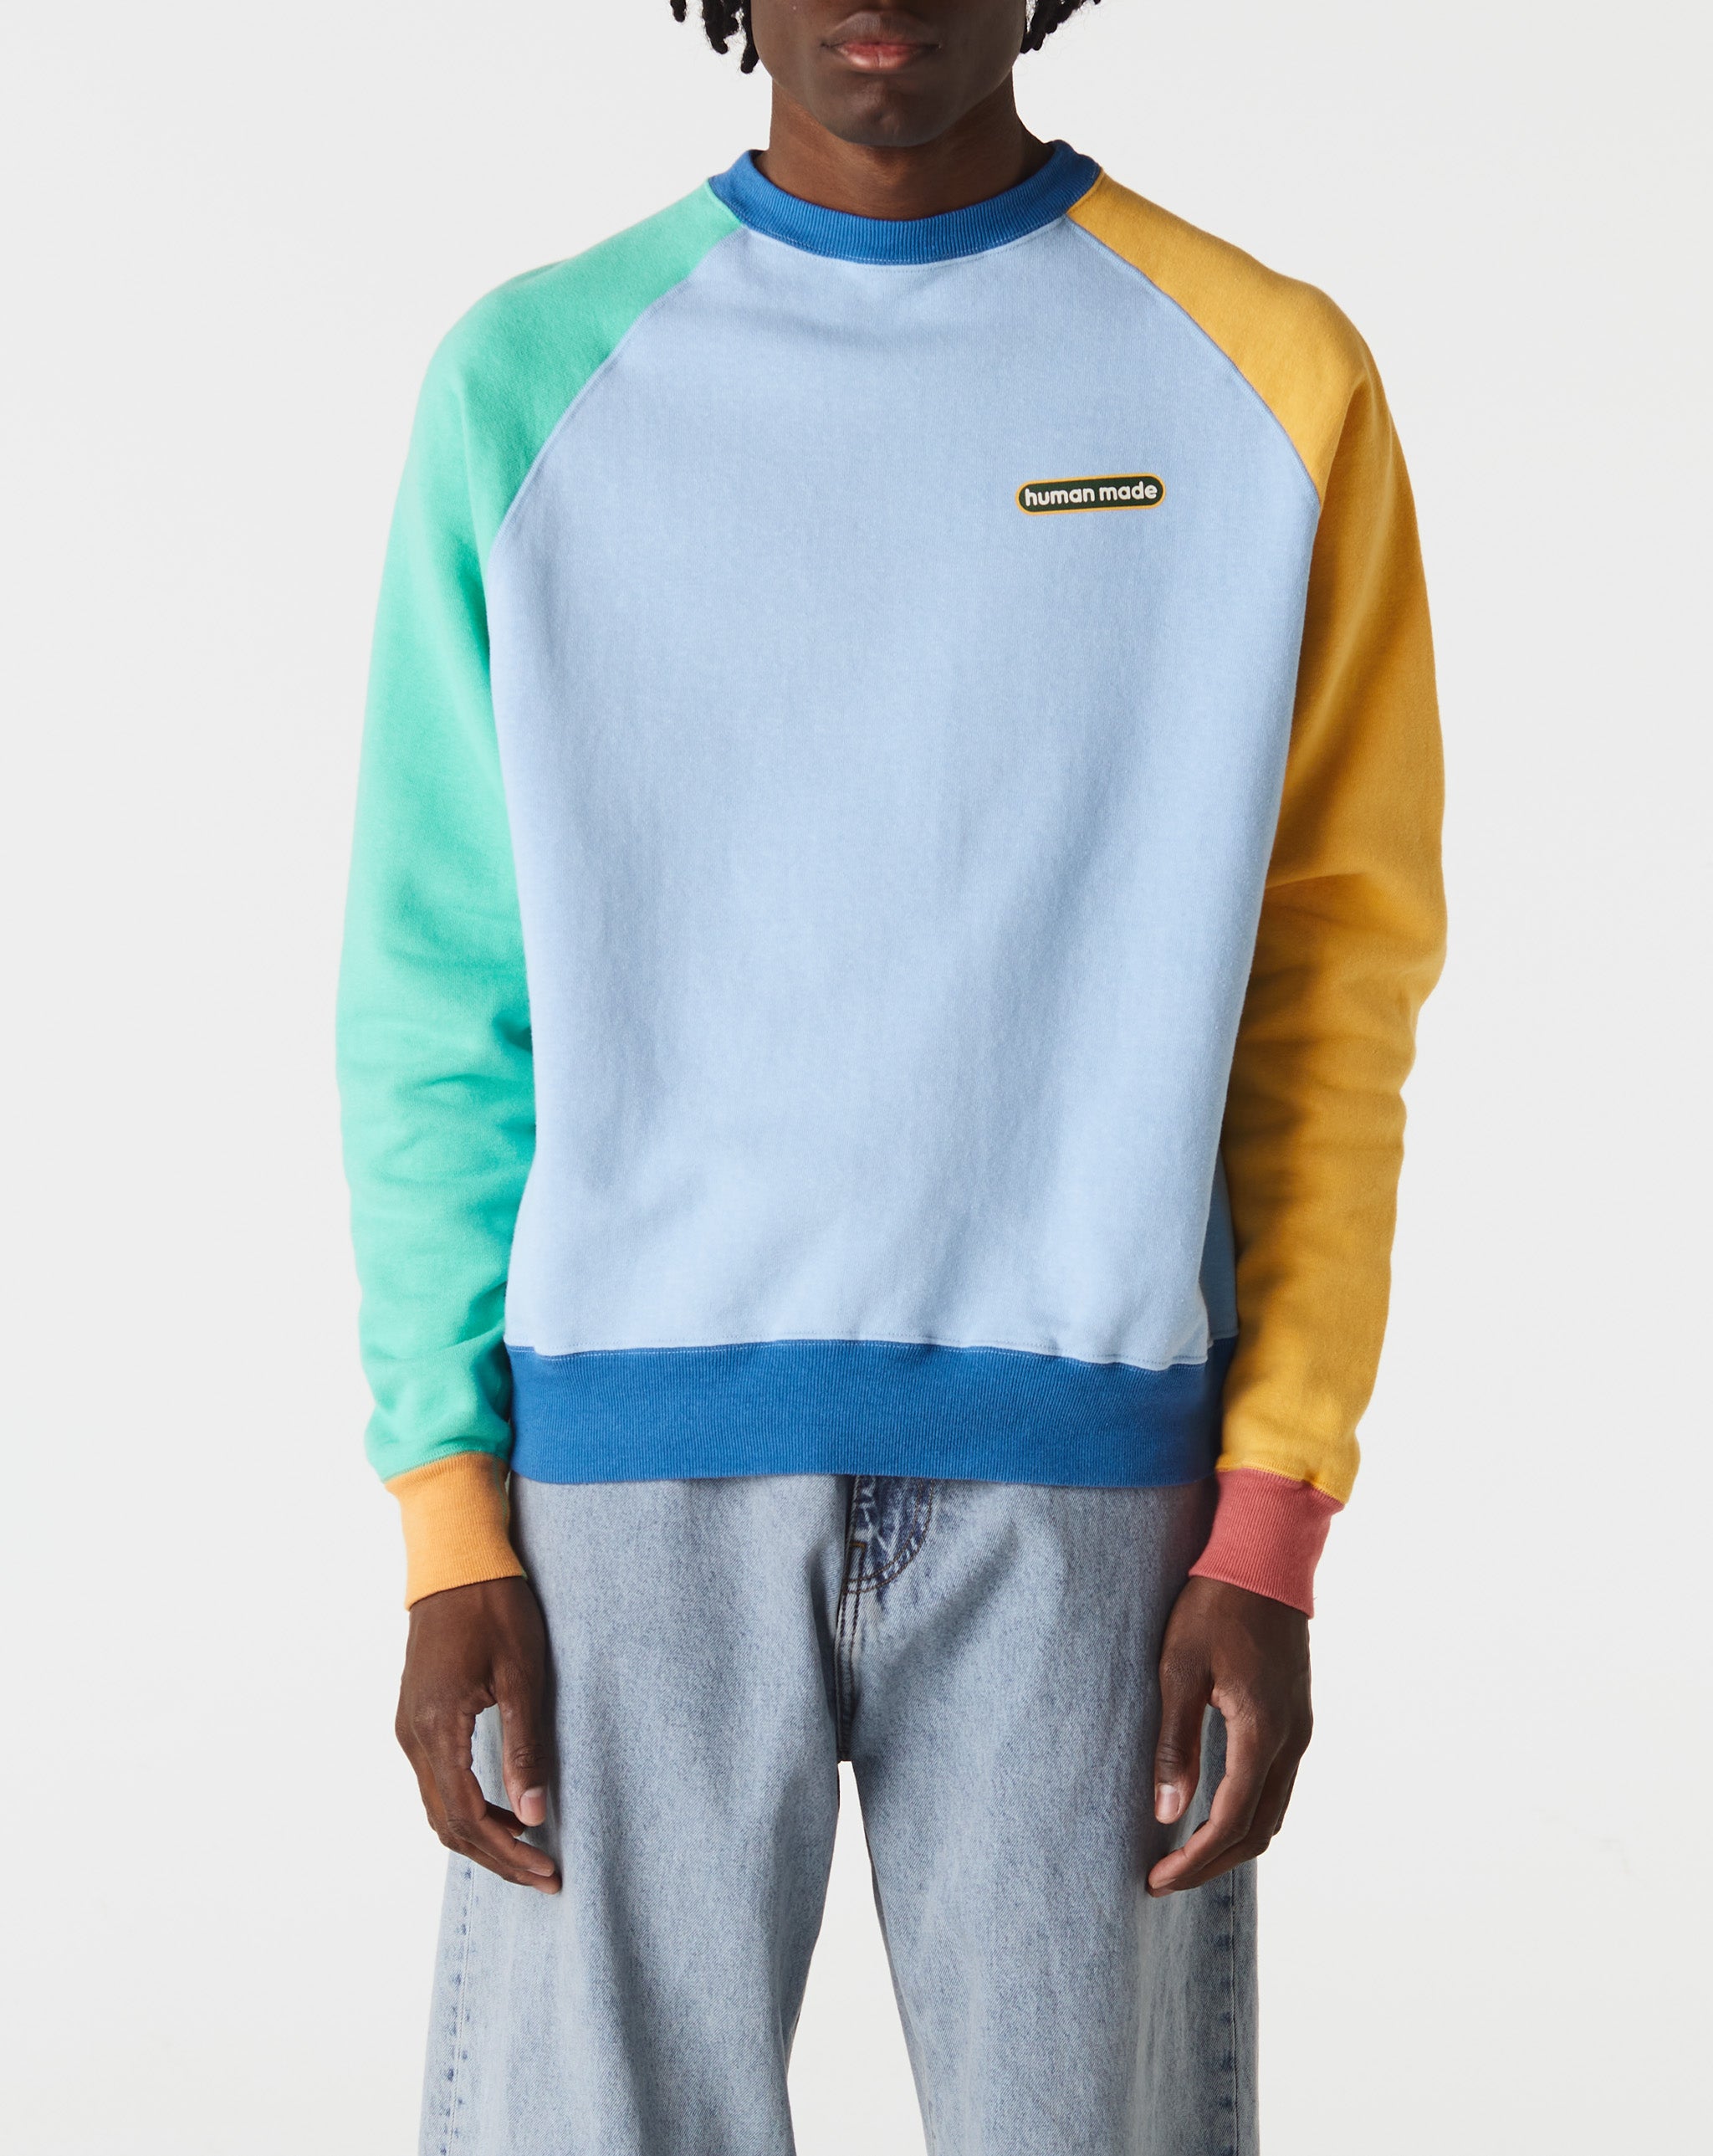 Human Made Crazy Tsuriami Sweatshirt  - Cheap Cerbe Jordan outlet